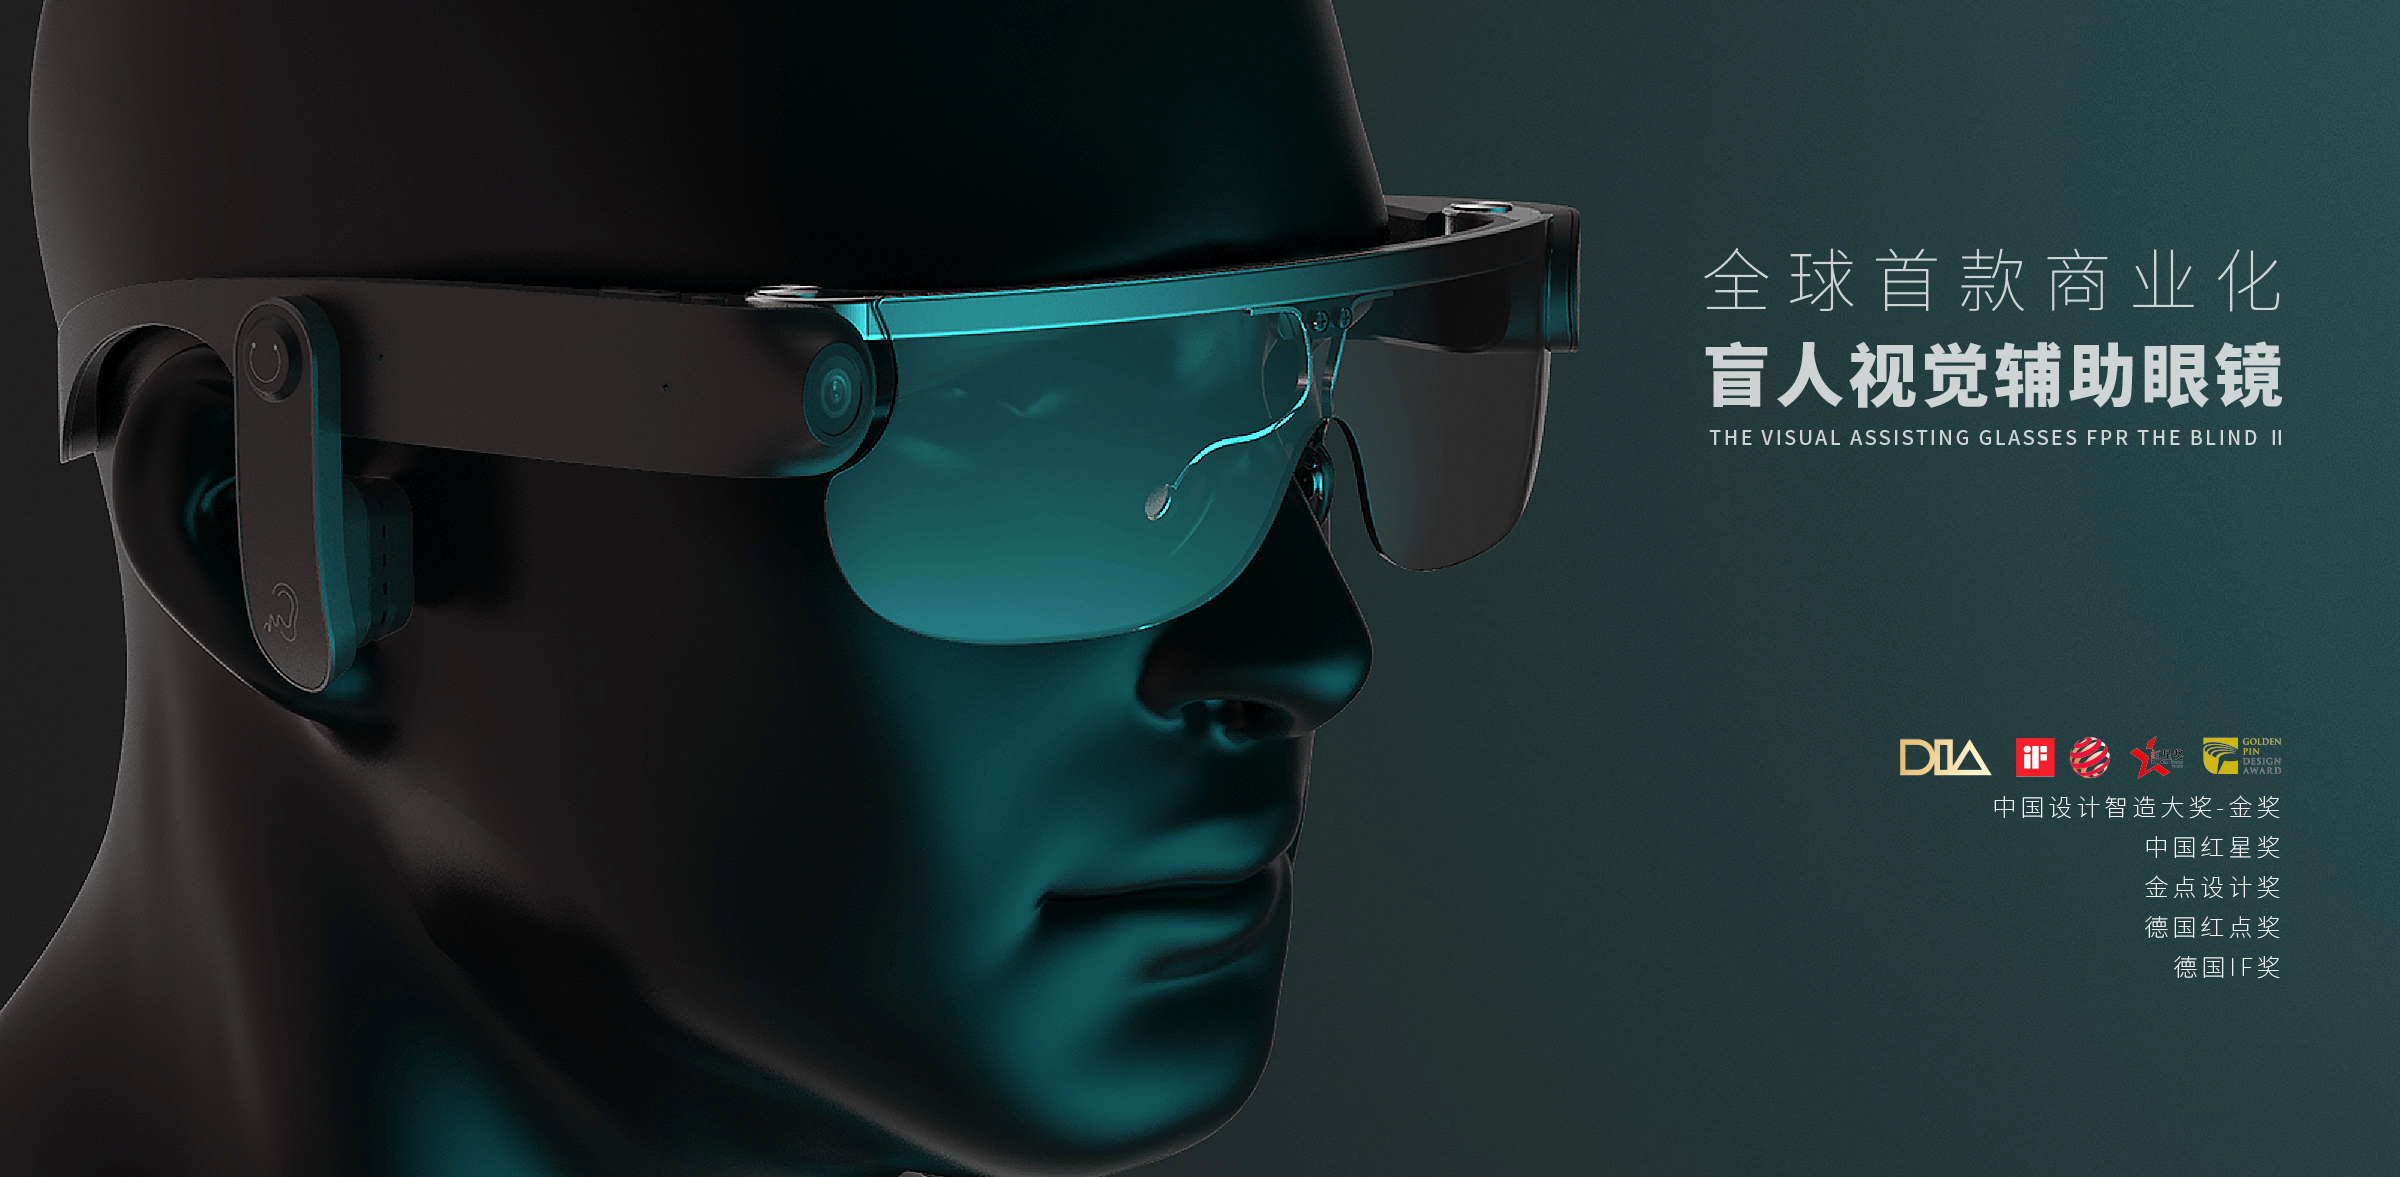 盲人视觉辅助眼镜-杭州医疗产品设计